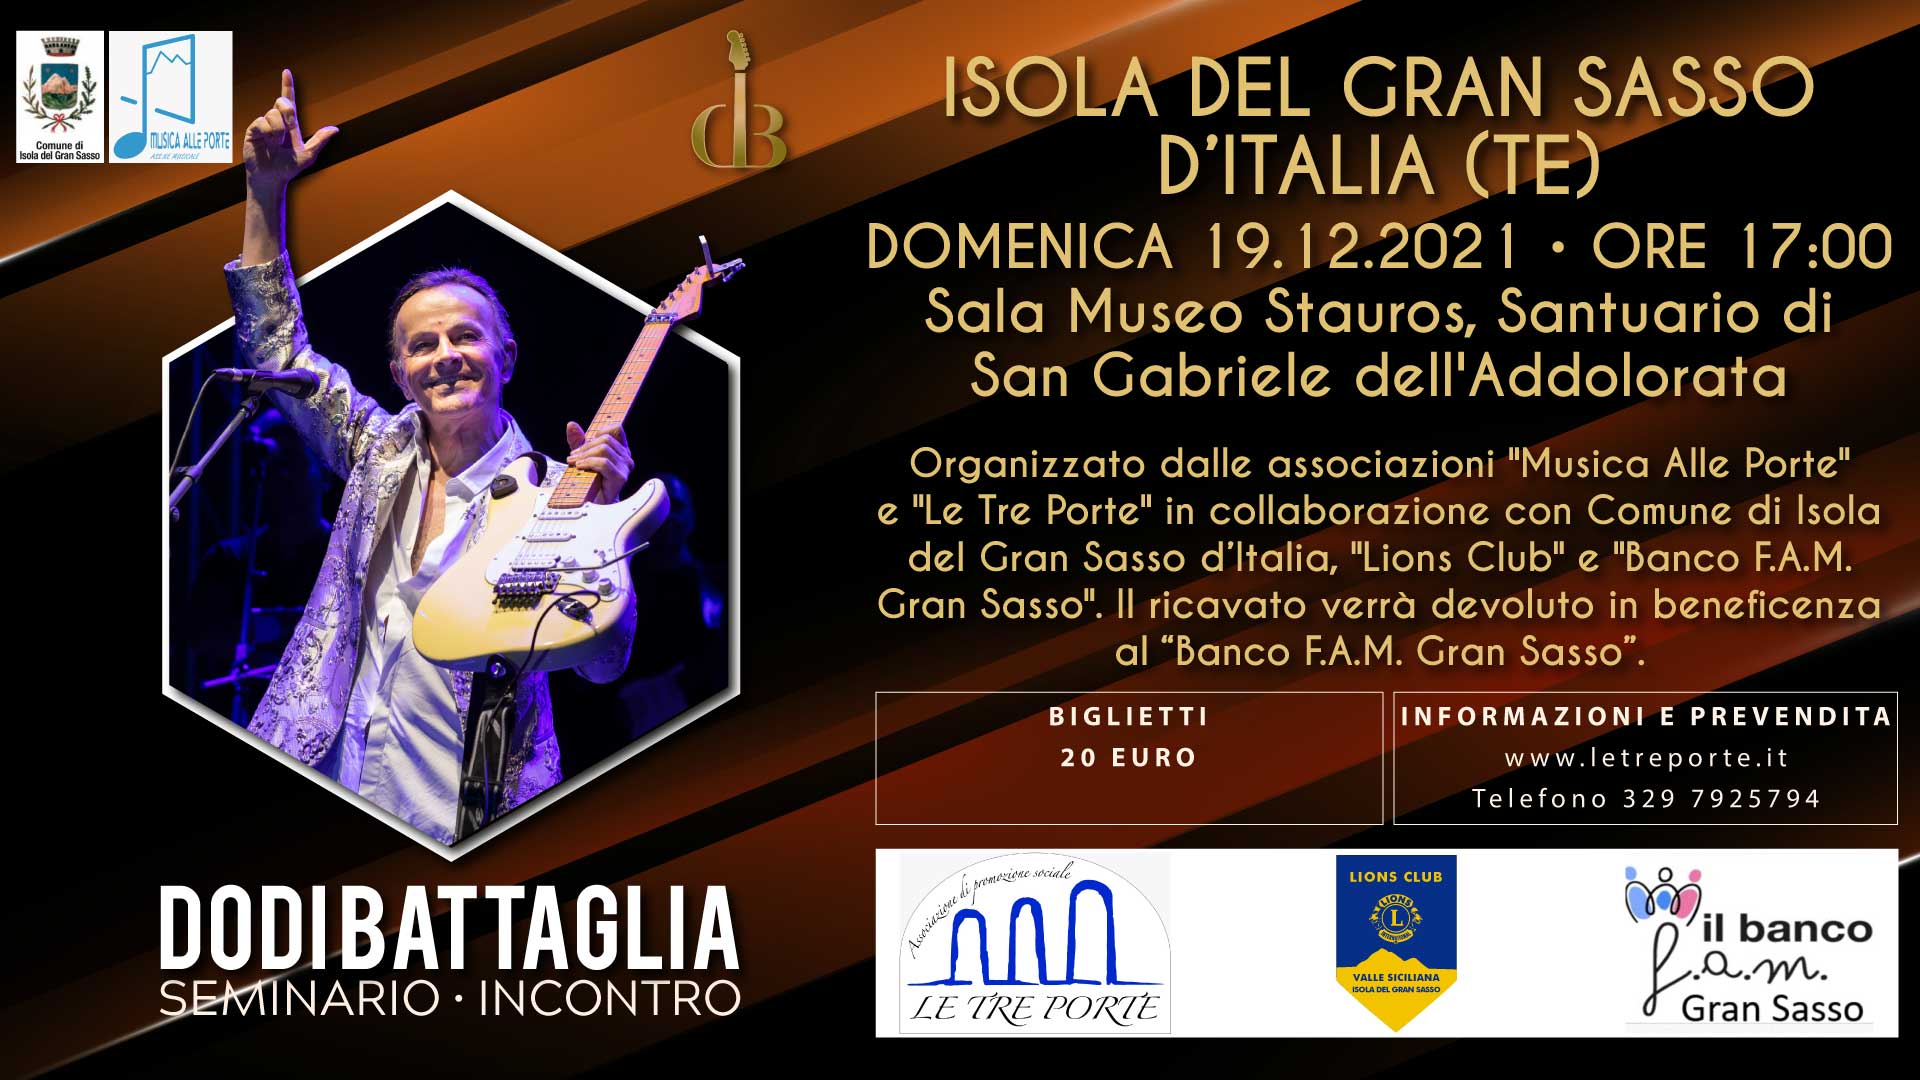 Seminario - Incontro con Dodi Battaglia - Isola del Gran Sasso d'Italia (TE) 19.12.2021